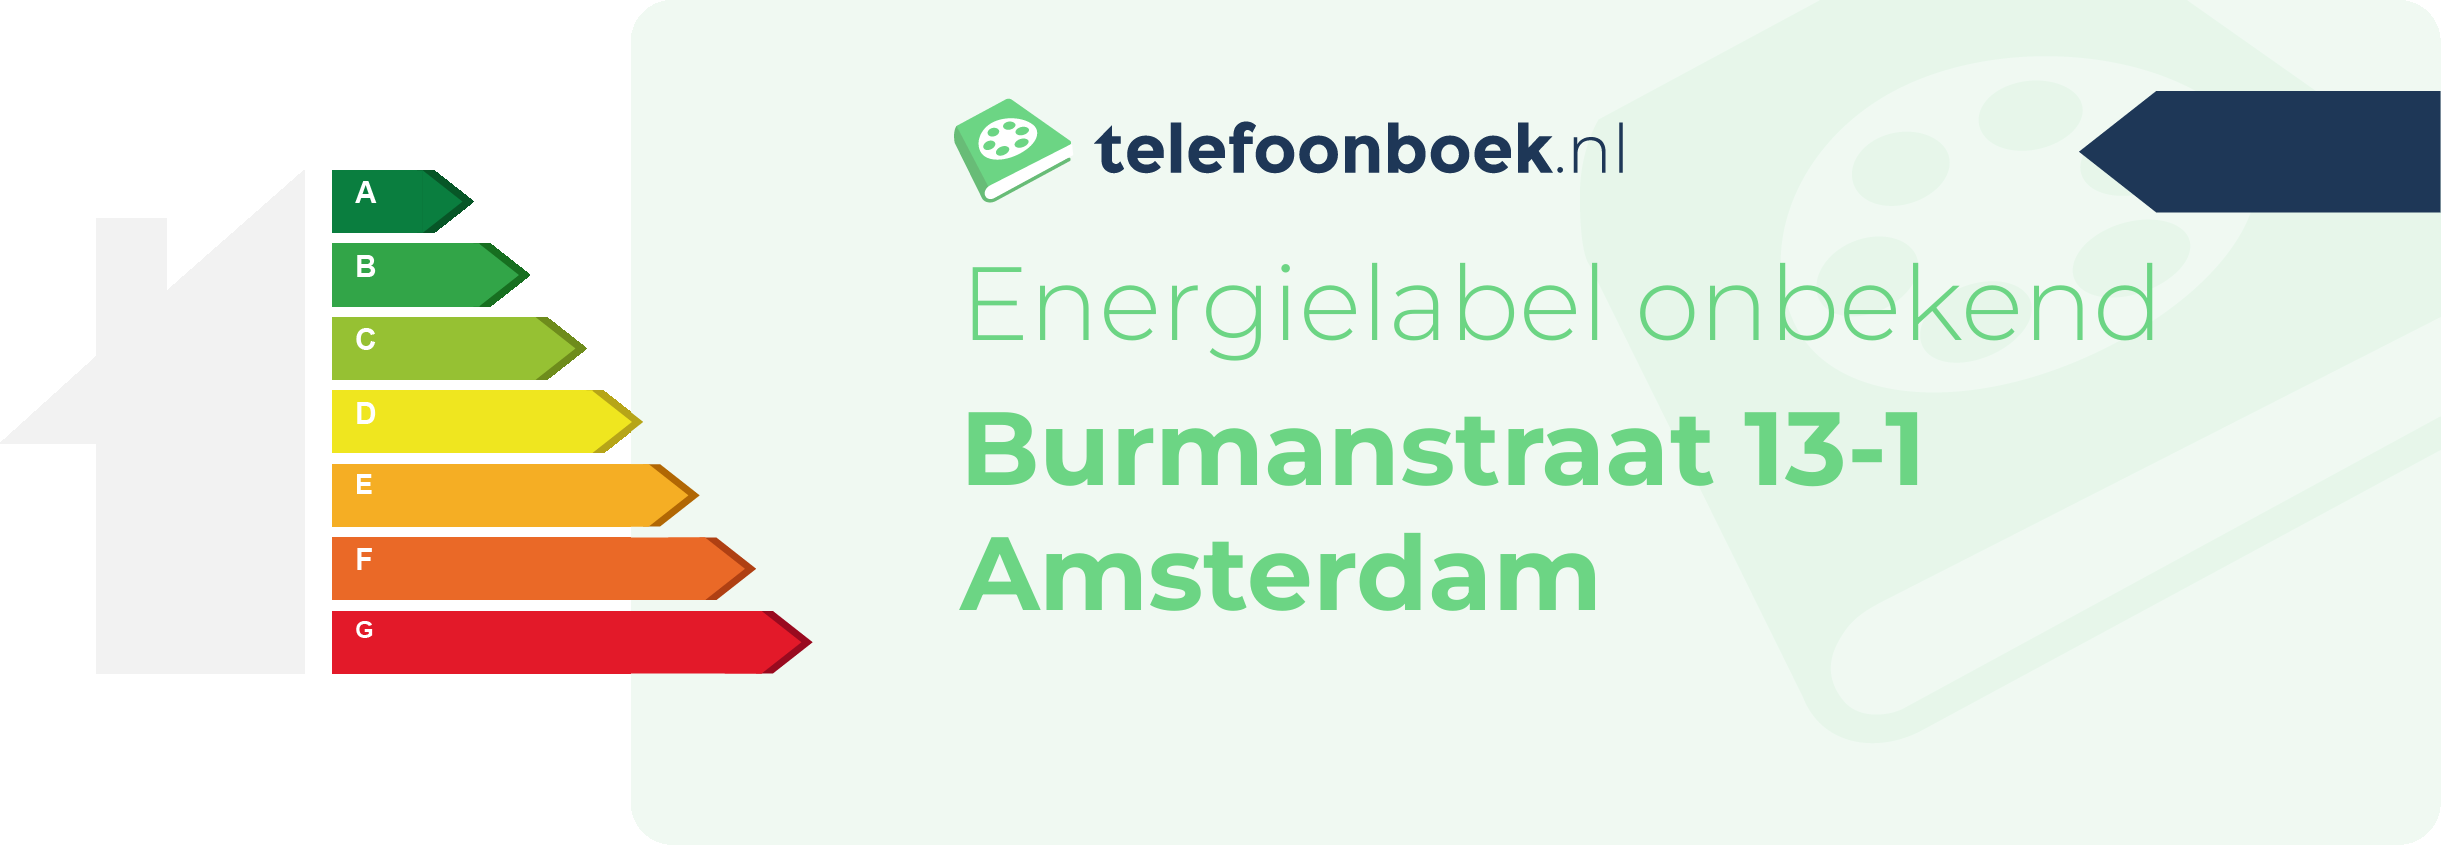 Energielabel Burmanstraat 13-1 Amsterdam